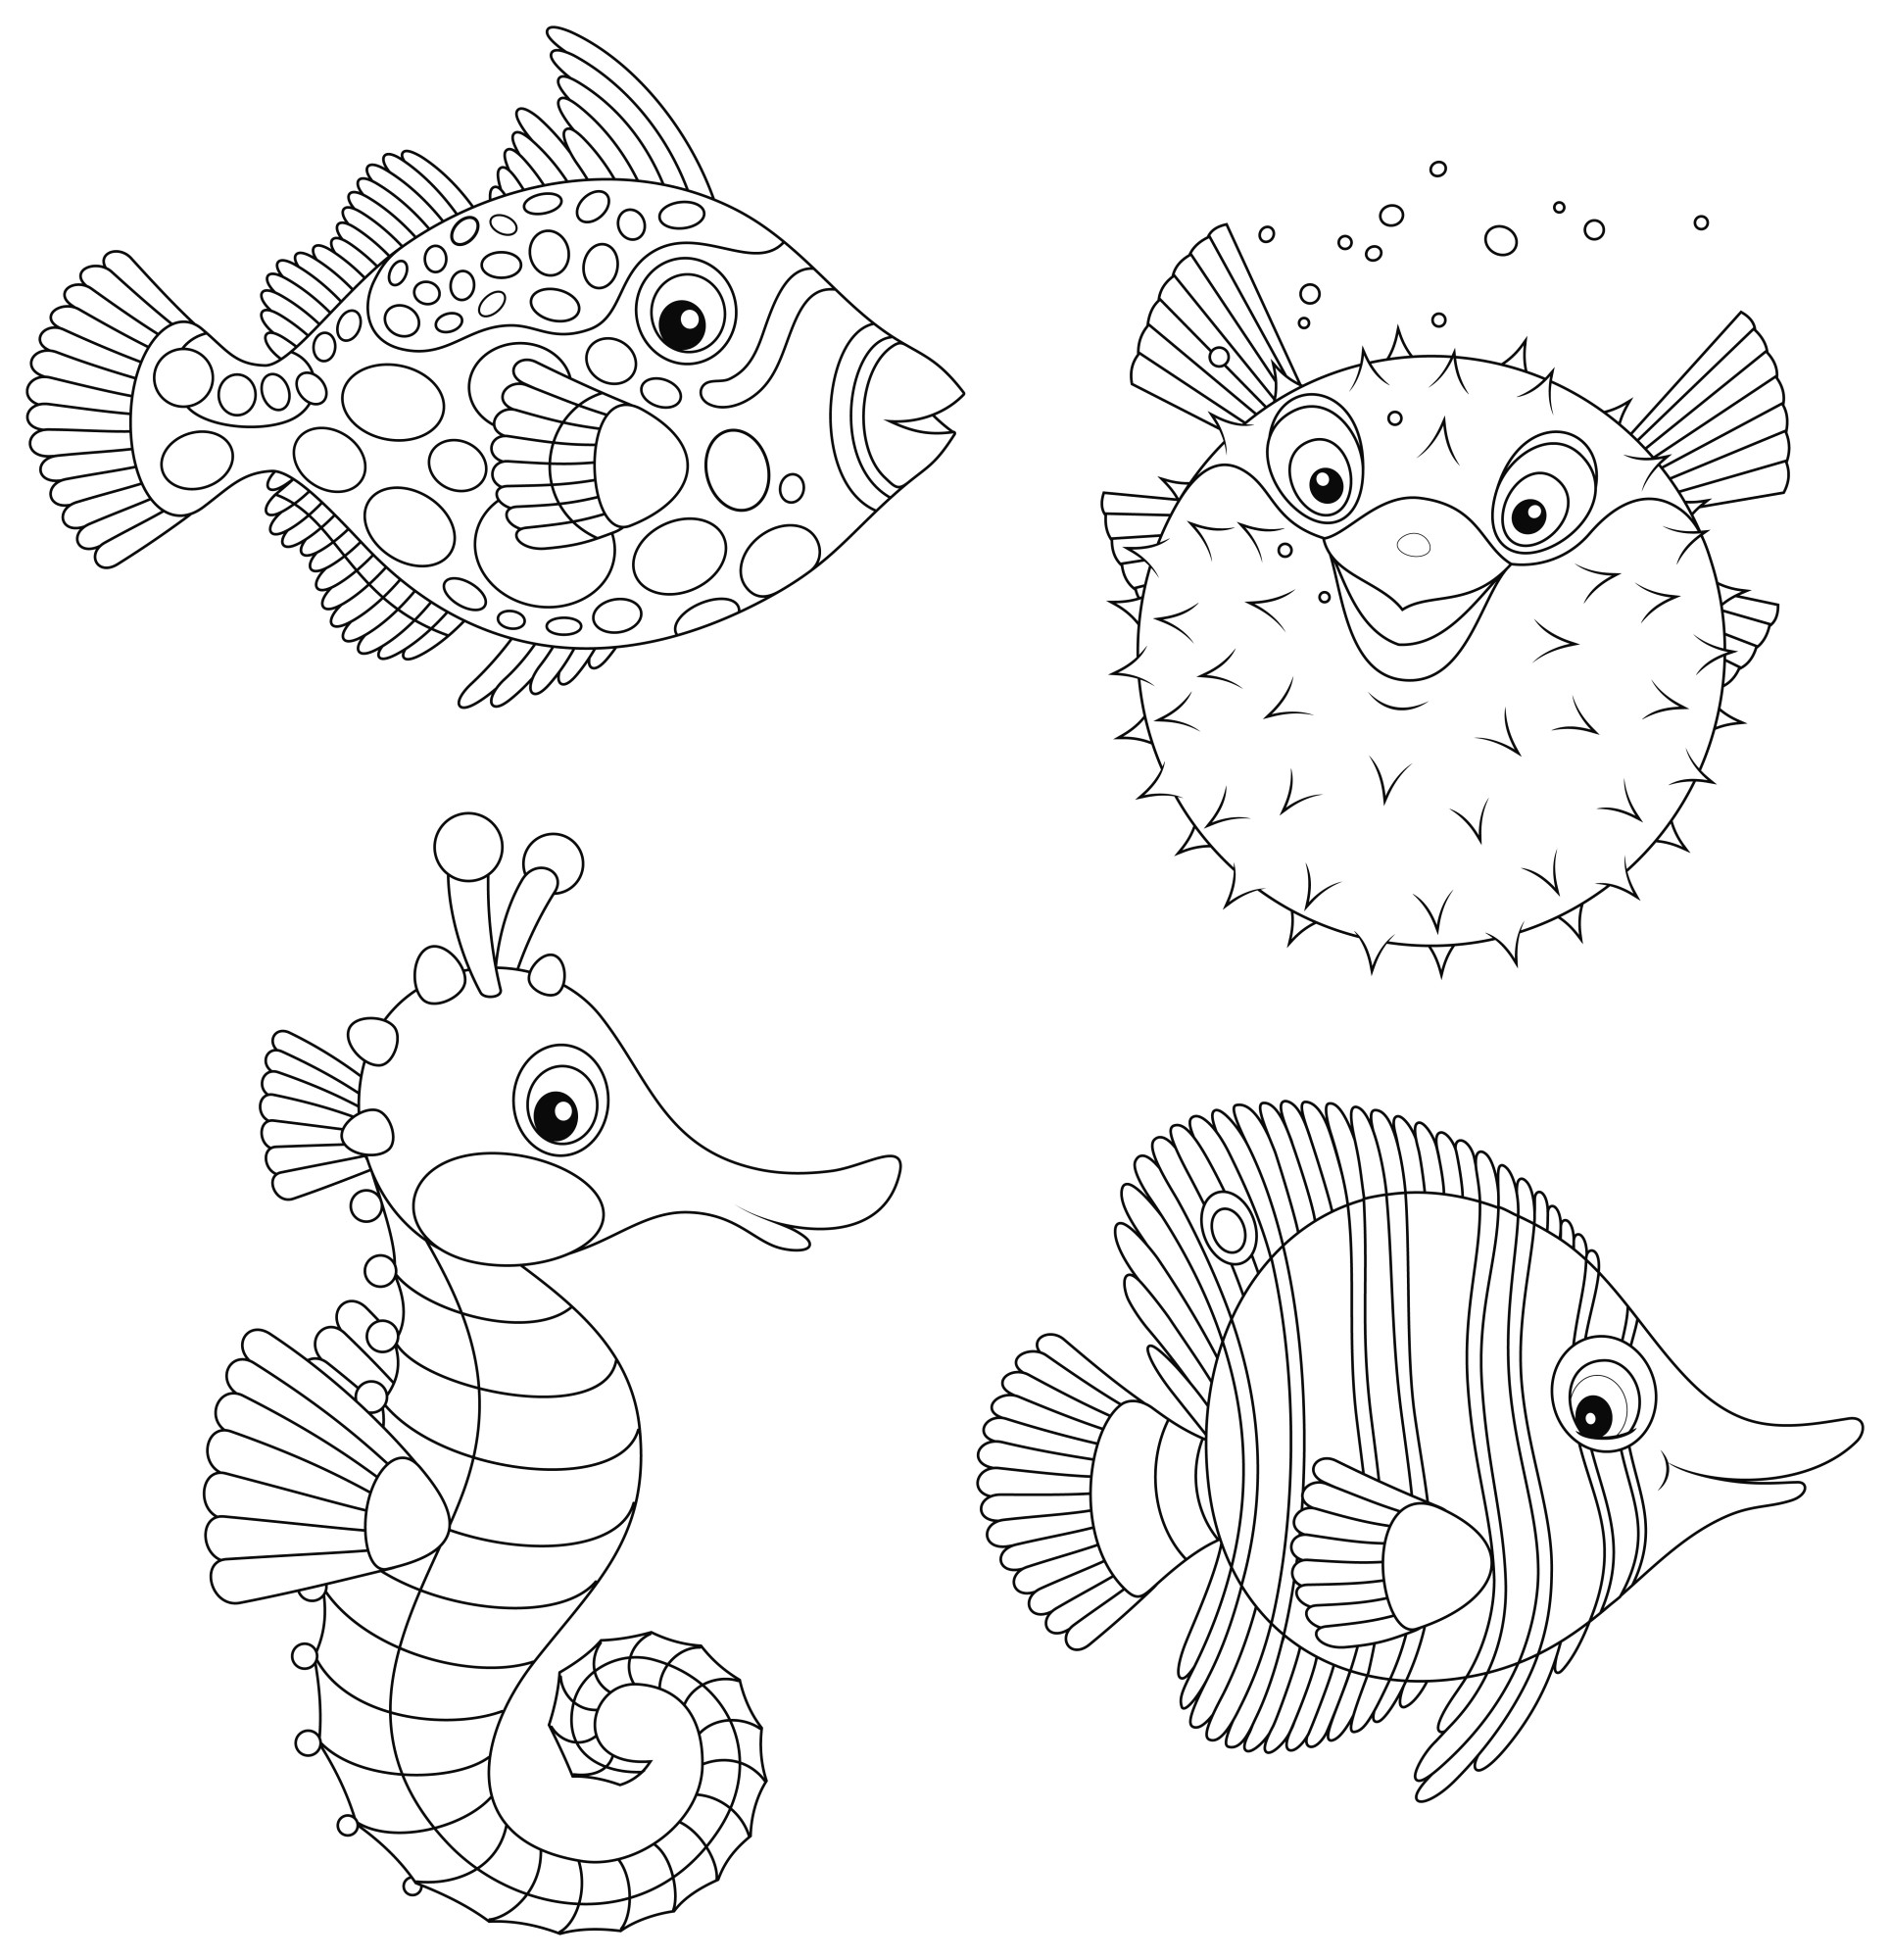 Раскраска для детей: экзотические тропические рыбы фугу, морские коньки, рыб-бабочек и спинорогов